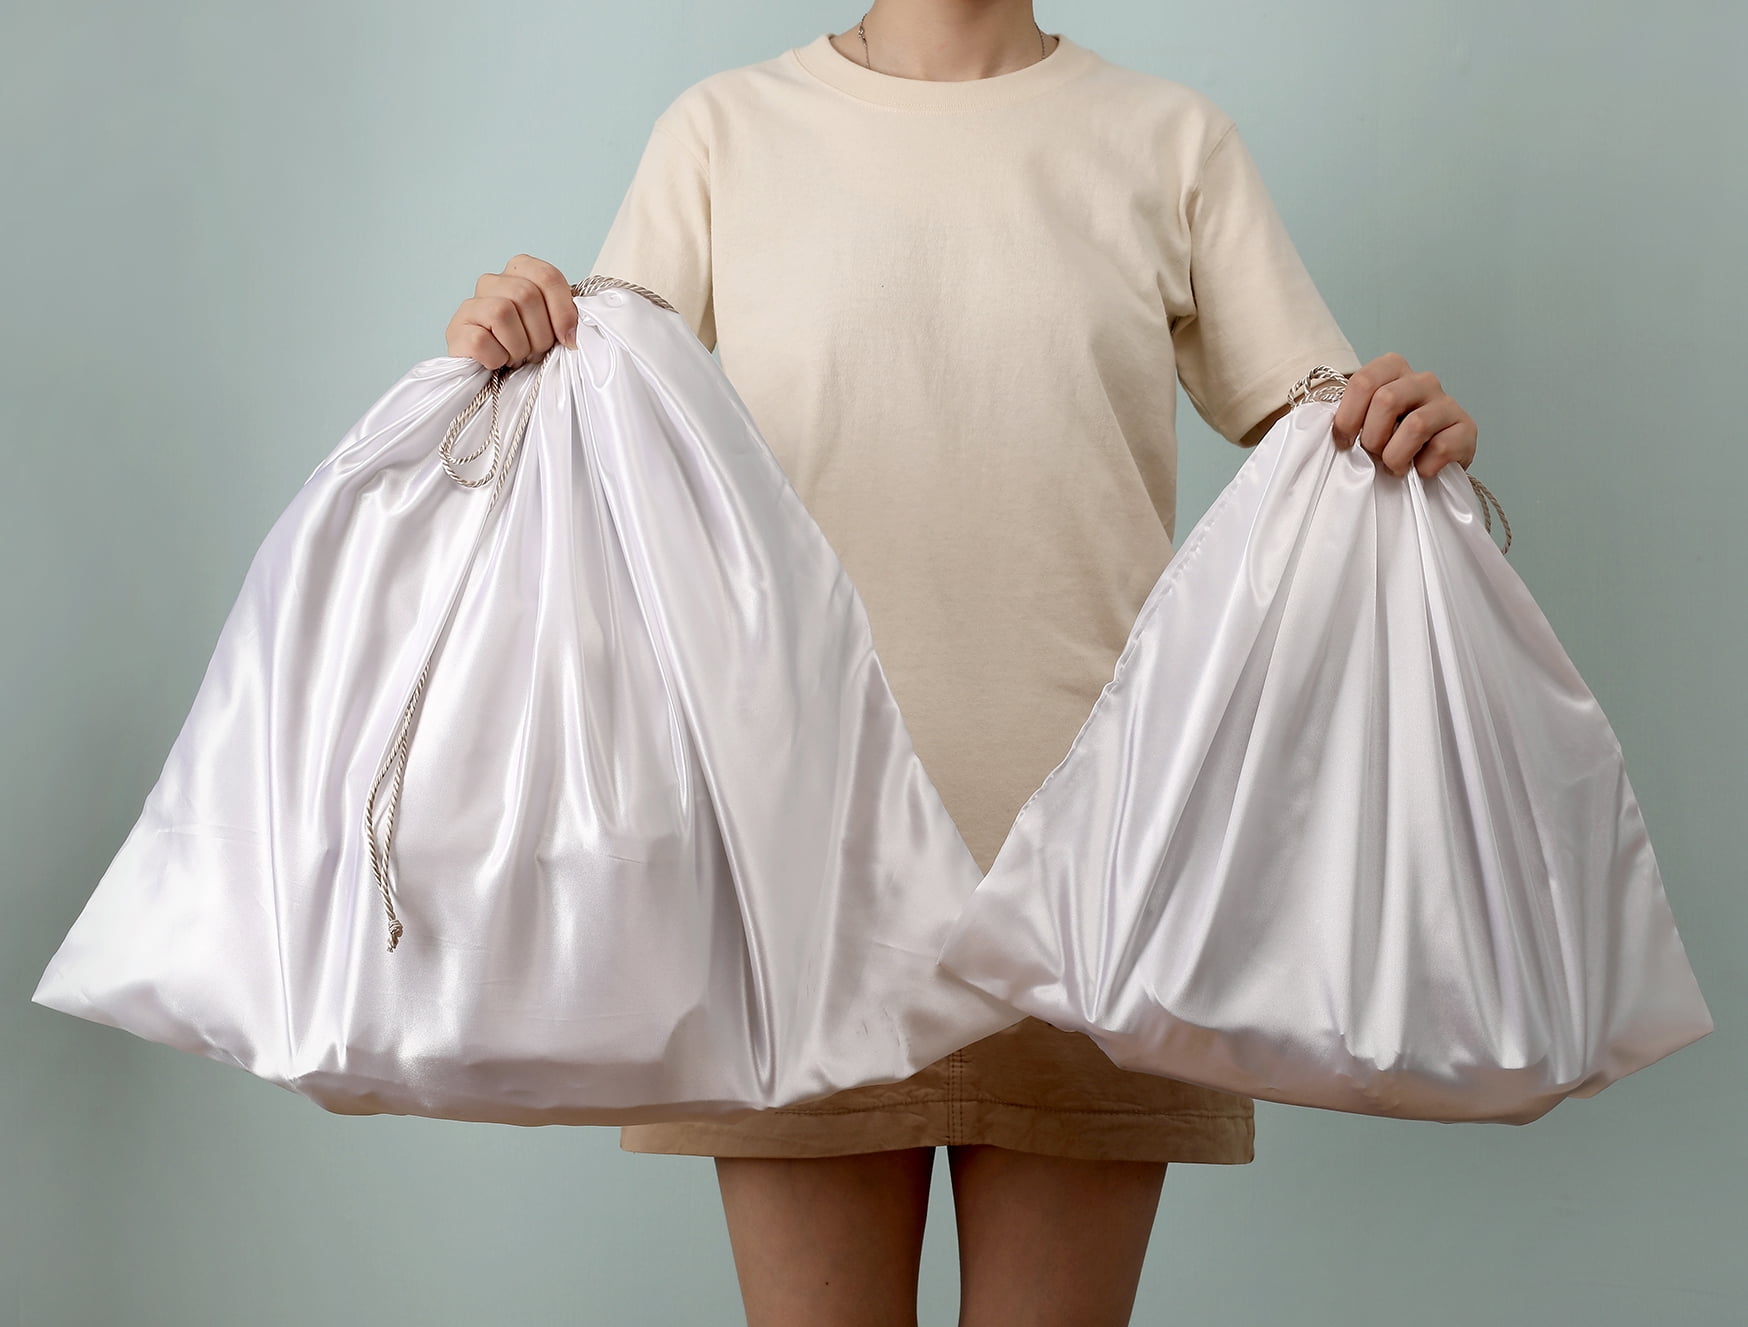 Auth Louis Vuitton 100% Cotton Dust bag Tight Cover Storage 24 x 19 x 6  L 